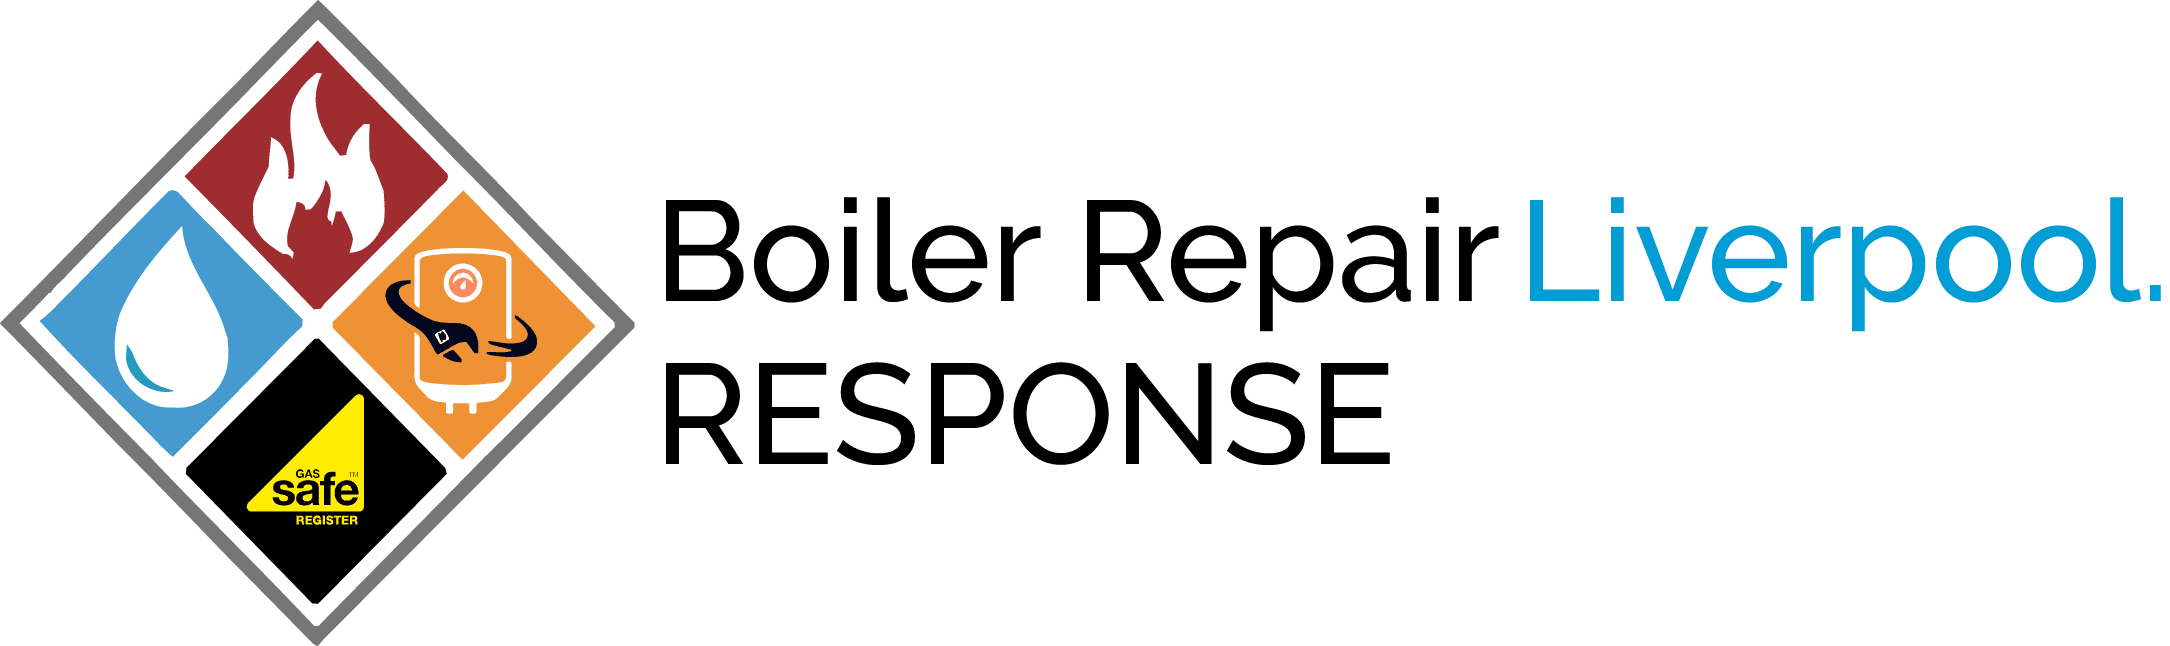 Boiler Repair Liverpool Logo